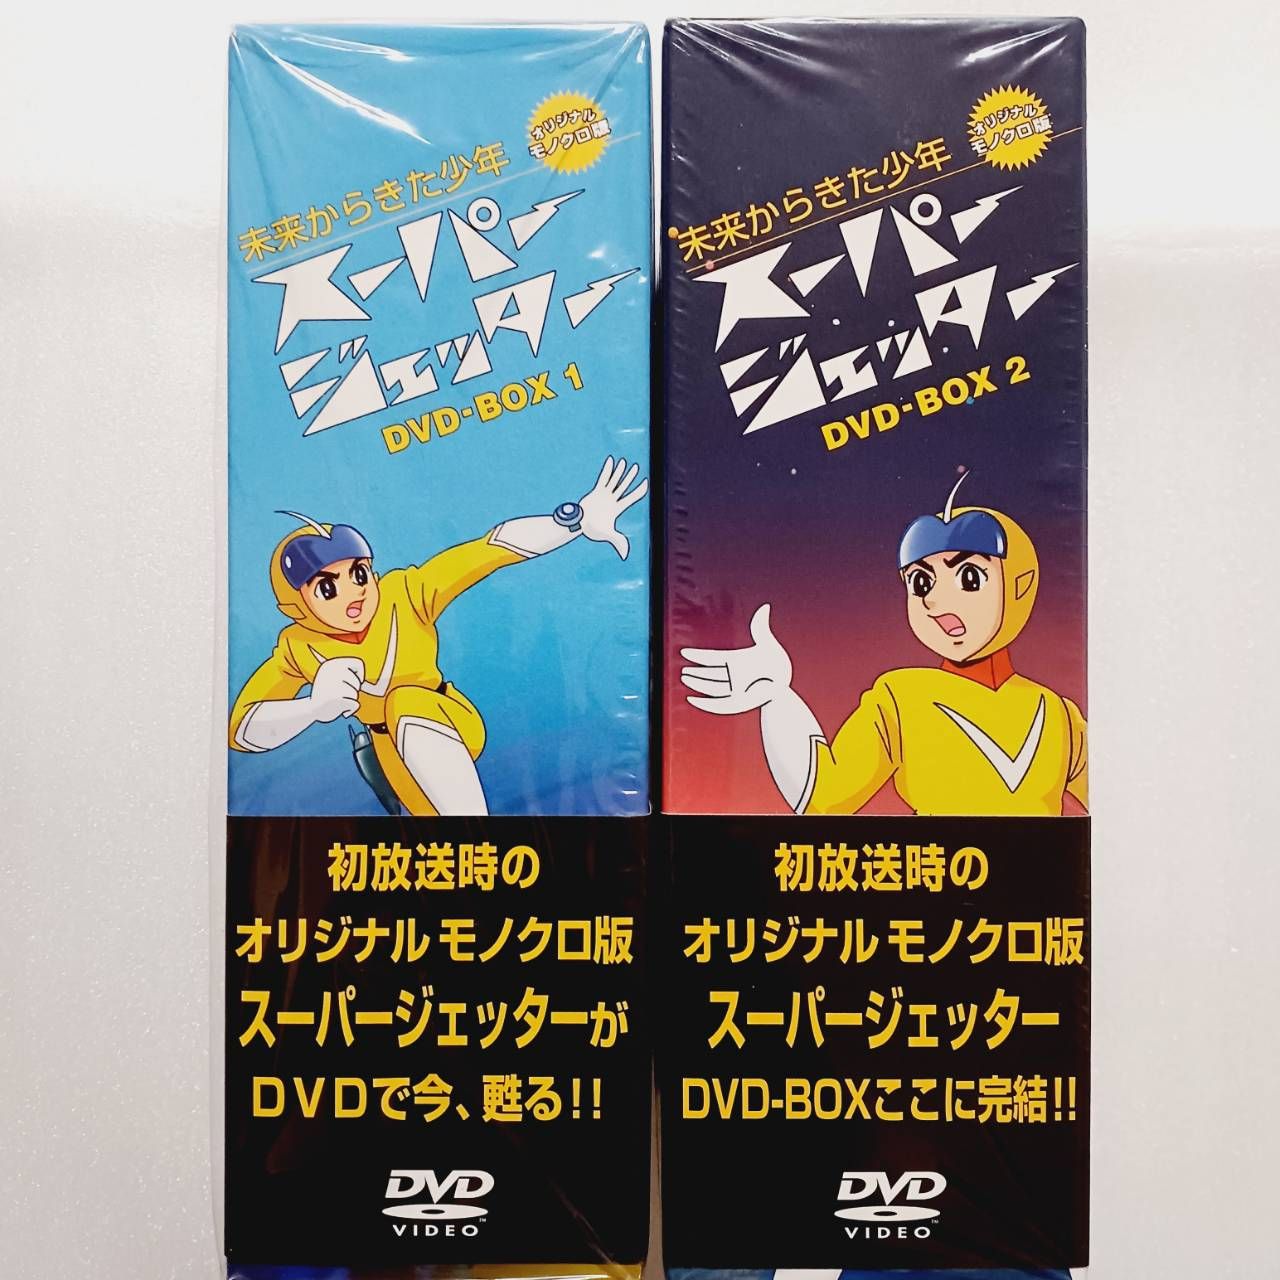 スーパージェッター DVD-BOX 2セット - メルカリ